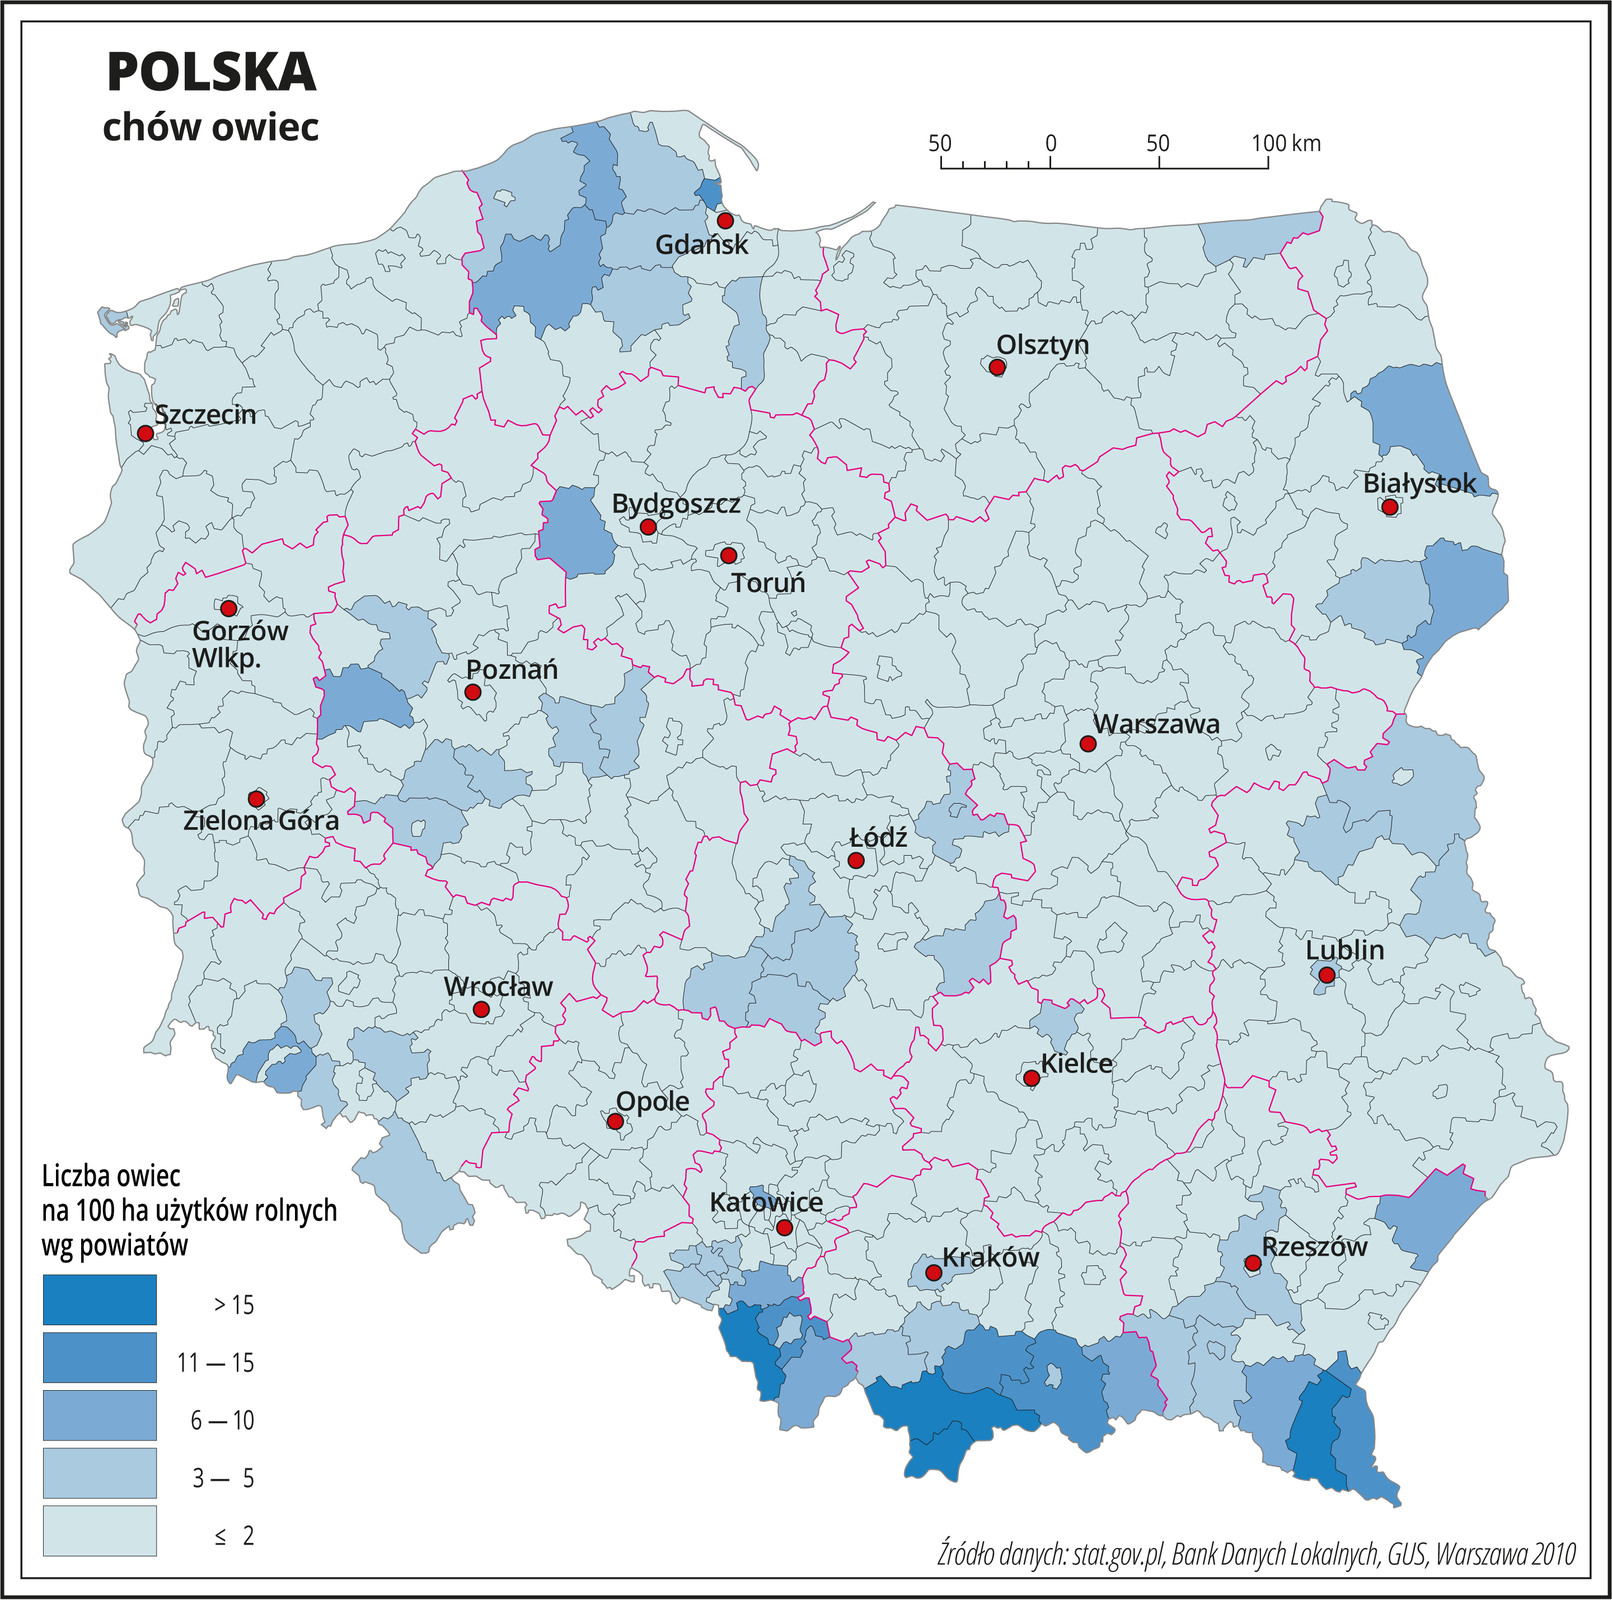 Ilustracja przedstawia mapę Polski z podziałem na powiaty, na której za pomocą kolorów przedstawiono liczbę sztuk owiec na sto hektarów użytków rolnych wg powiatów. Na mapie czerwonymi liniami oznaczono granice województw, a czarnymi granice powiatów, czerwonymi kropkami oznaczono miasta wojewódzkie i je opisano. Najciemniejszymi odcieniami koloru niebieskiego oznaczono obszary, gdzie występuje powyżej dziesięciu sztuk owiec na sto hektarów użytków rolnych. Są to tereny górskie w województwie śląskim, małopolskim i podkarpackim. Od sześciu do dziesięciu sztuk owiec na sto hektarów użytków rolnych występuje w pojedynczych powiatach w województwie podlaskim, pomorskim, kujawsko-pomorskim i wielkopolskim. Pozostała część Polski oznaczona jest kolorem błękitnym obrazującym najmniejsze występowanie owiec – poniżej pięciu sztuk na sto hektarów użytków rolnych. Poniżej mapy w legendzie opisano kolory użyte na mapie.